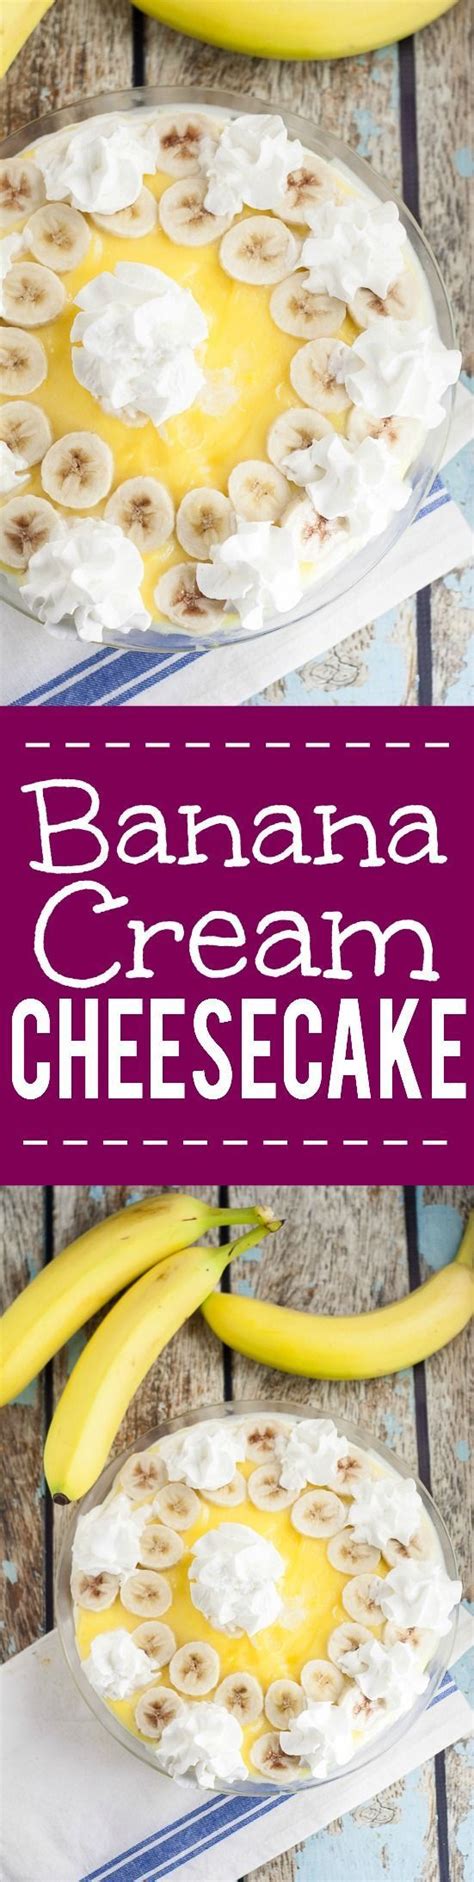 Banana Cream Cheesecake Pie Recipe This Banana Cream Cheesecake